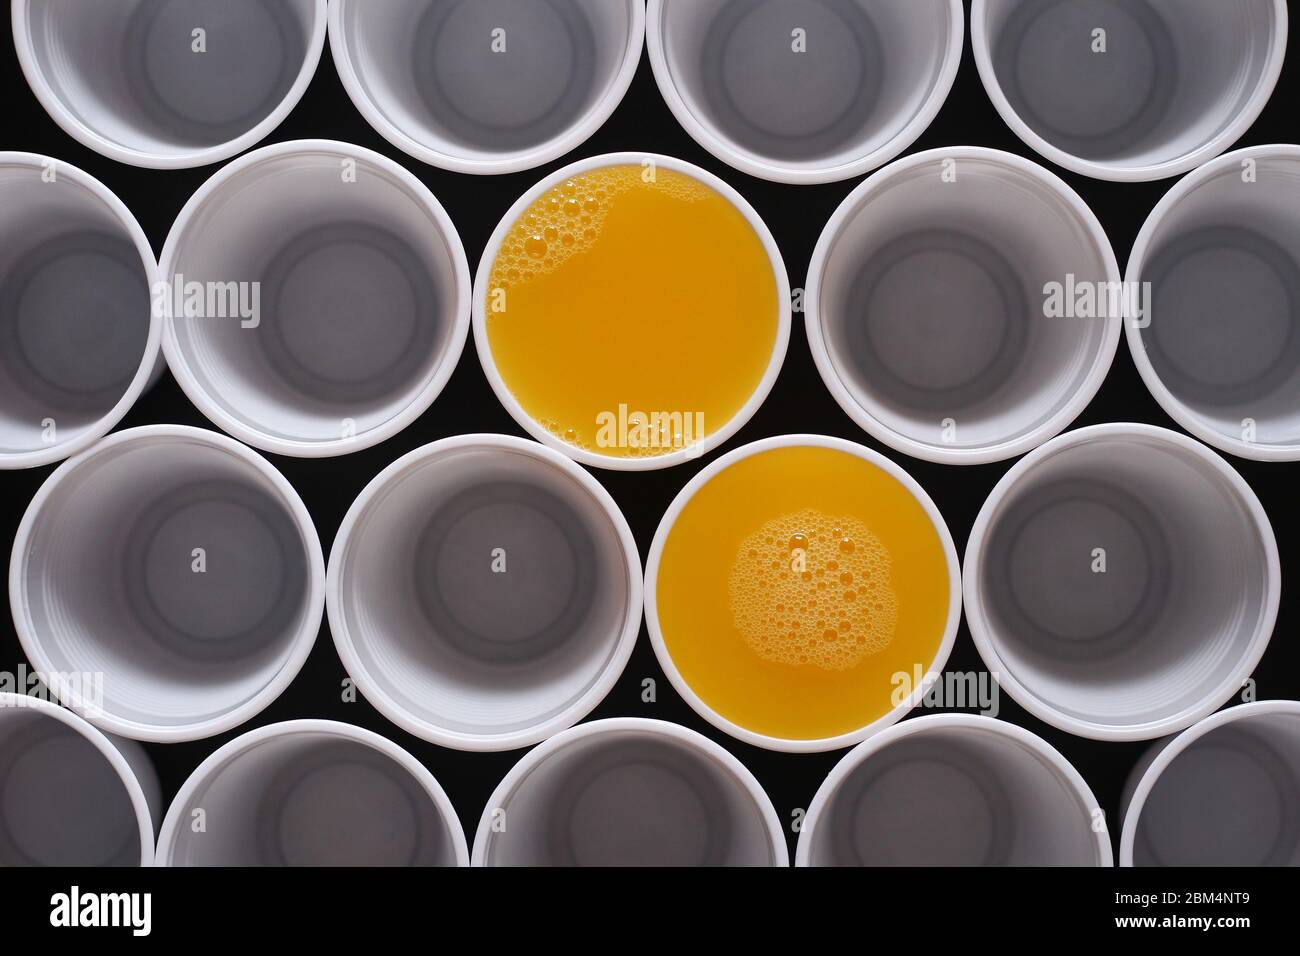 Molte tazze monouso in plastica, due sono riempite di succo d'arancia, visto dall'alto Foto Stock